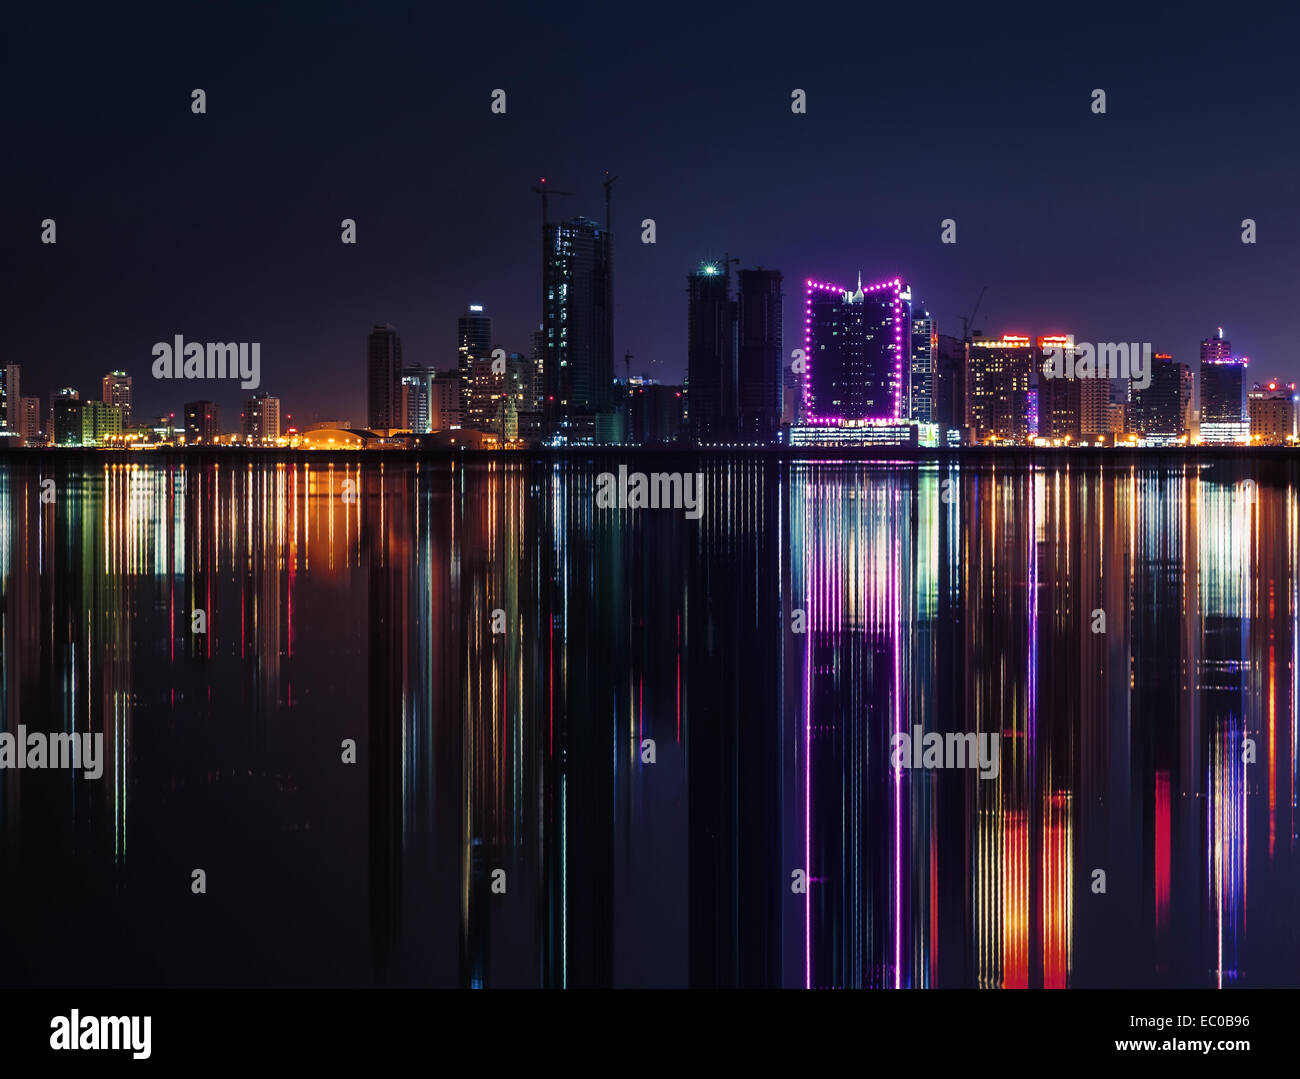 Nuit sur la ville moderne avec des néons lumineux et reflet dans l'eau. Manama, la capitale de Bahreïn, au Moyen-Orient Banque D'Images